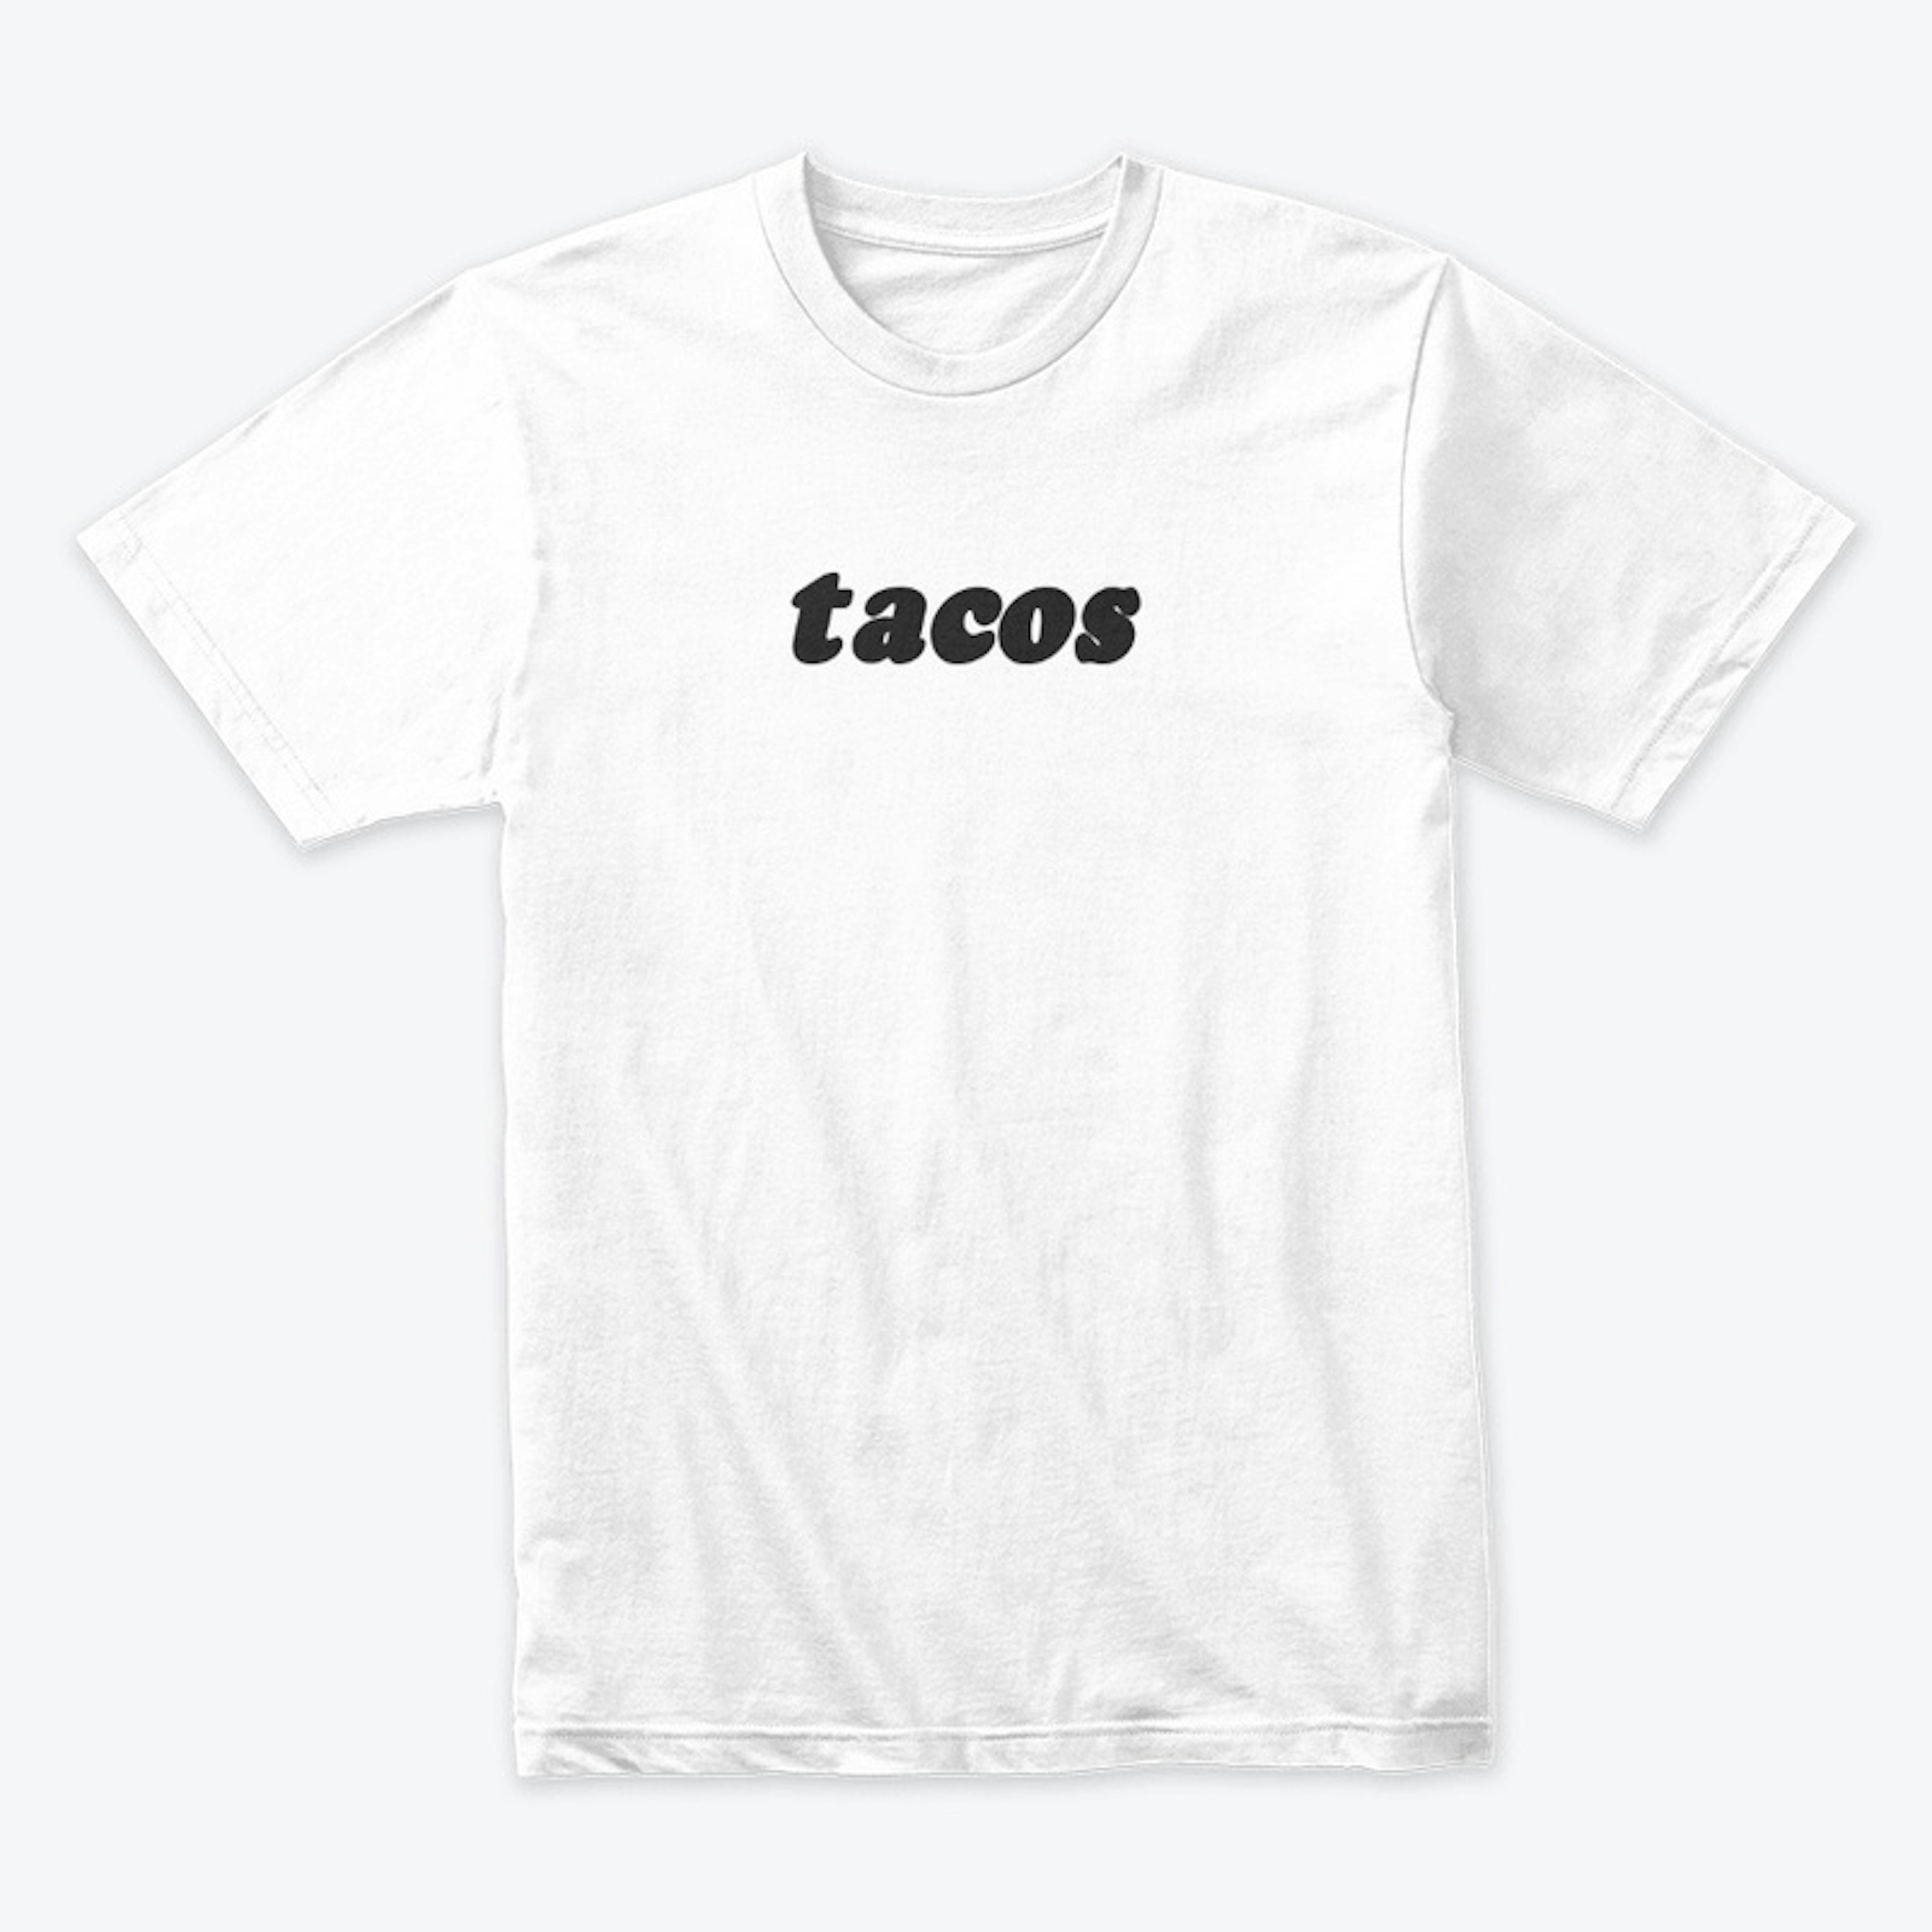 tacos (version 1)